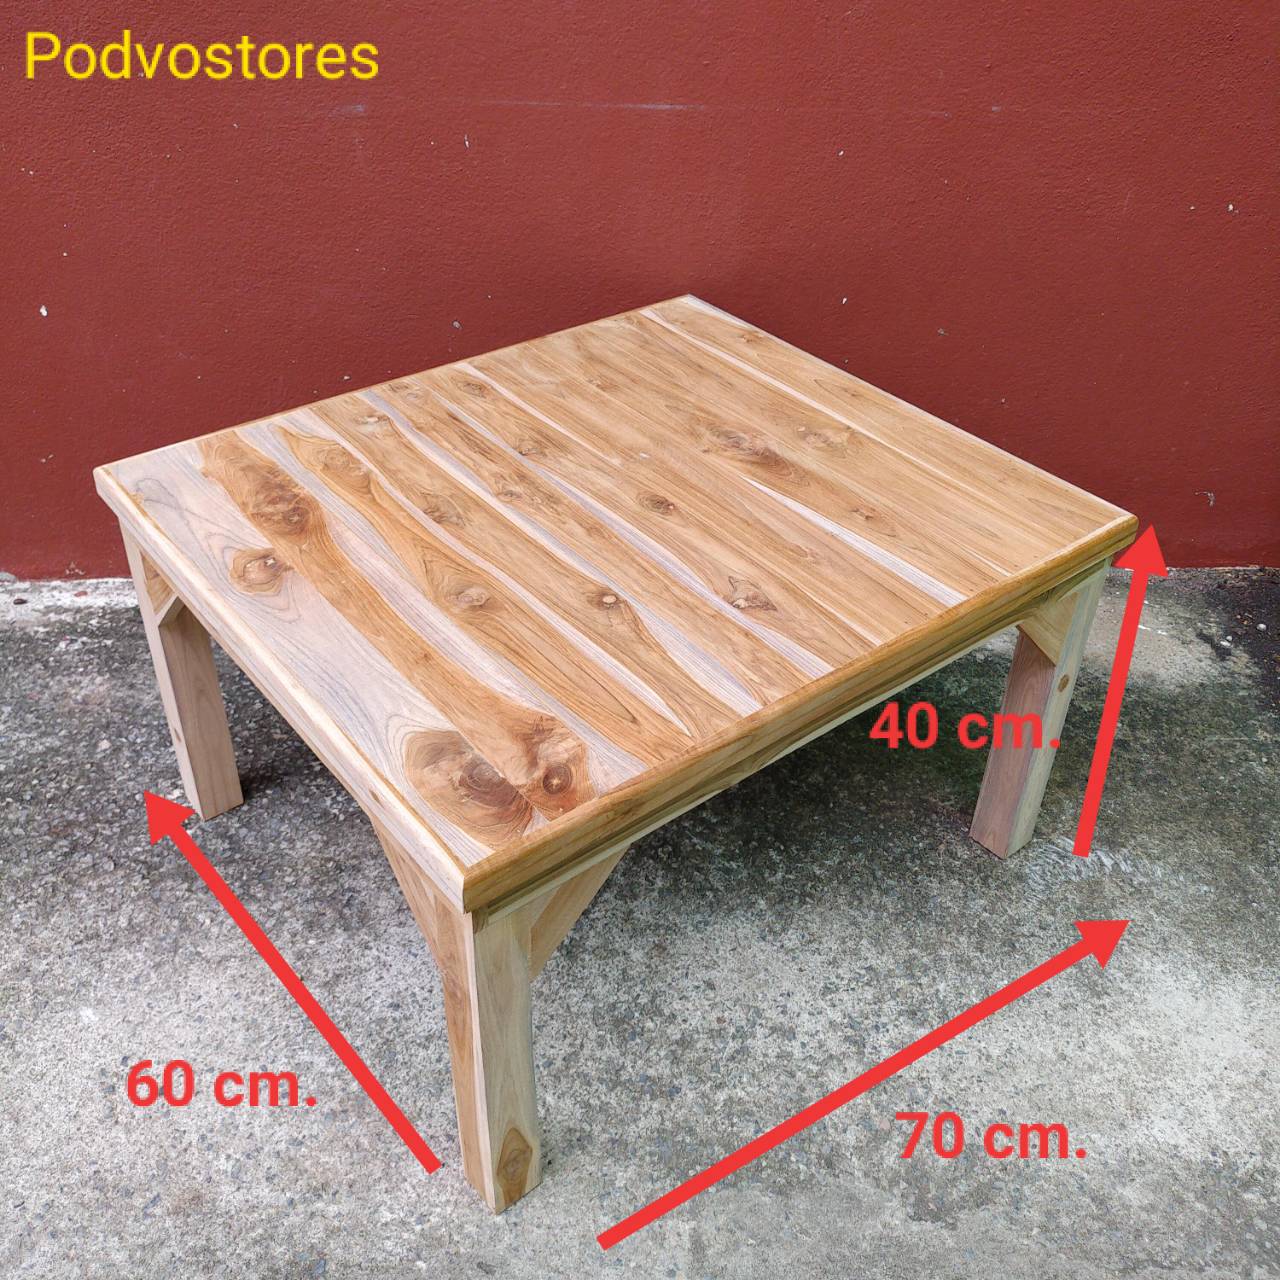 โต๊ะไม้สัก โต๊ะญี่ปุ่น (กว้าง 60 cm. ยาว 70 cm. สูง 40 cm.) ทำจากไม้สัก งานดิบไม่ได้ทำสี โต๊ะวางของ ที่วางของ โต๊ะตัวเตี้ย โต๊ะปิ๊กนิก โต๊ะขนาดเ